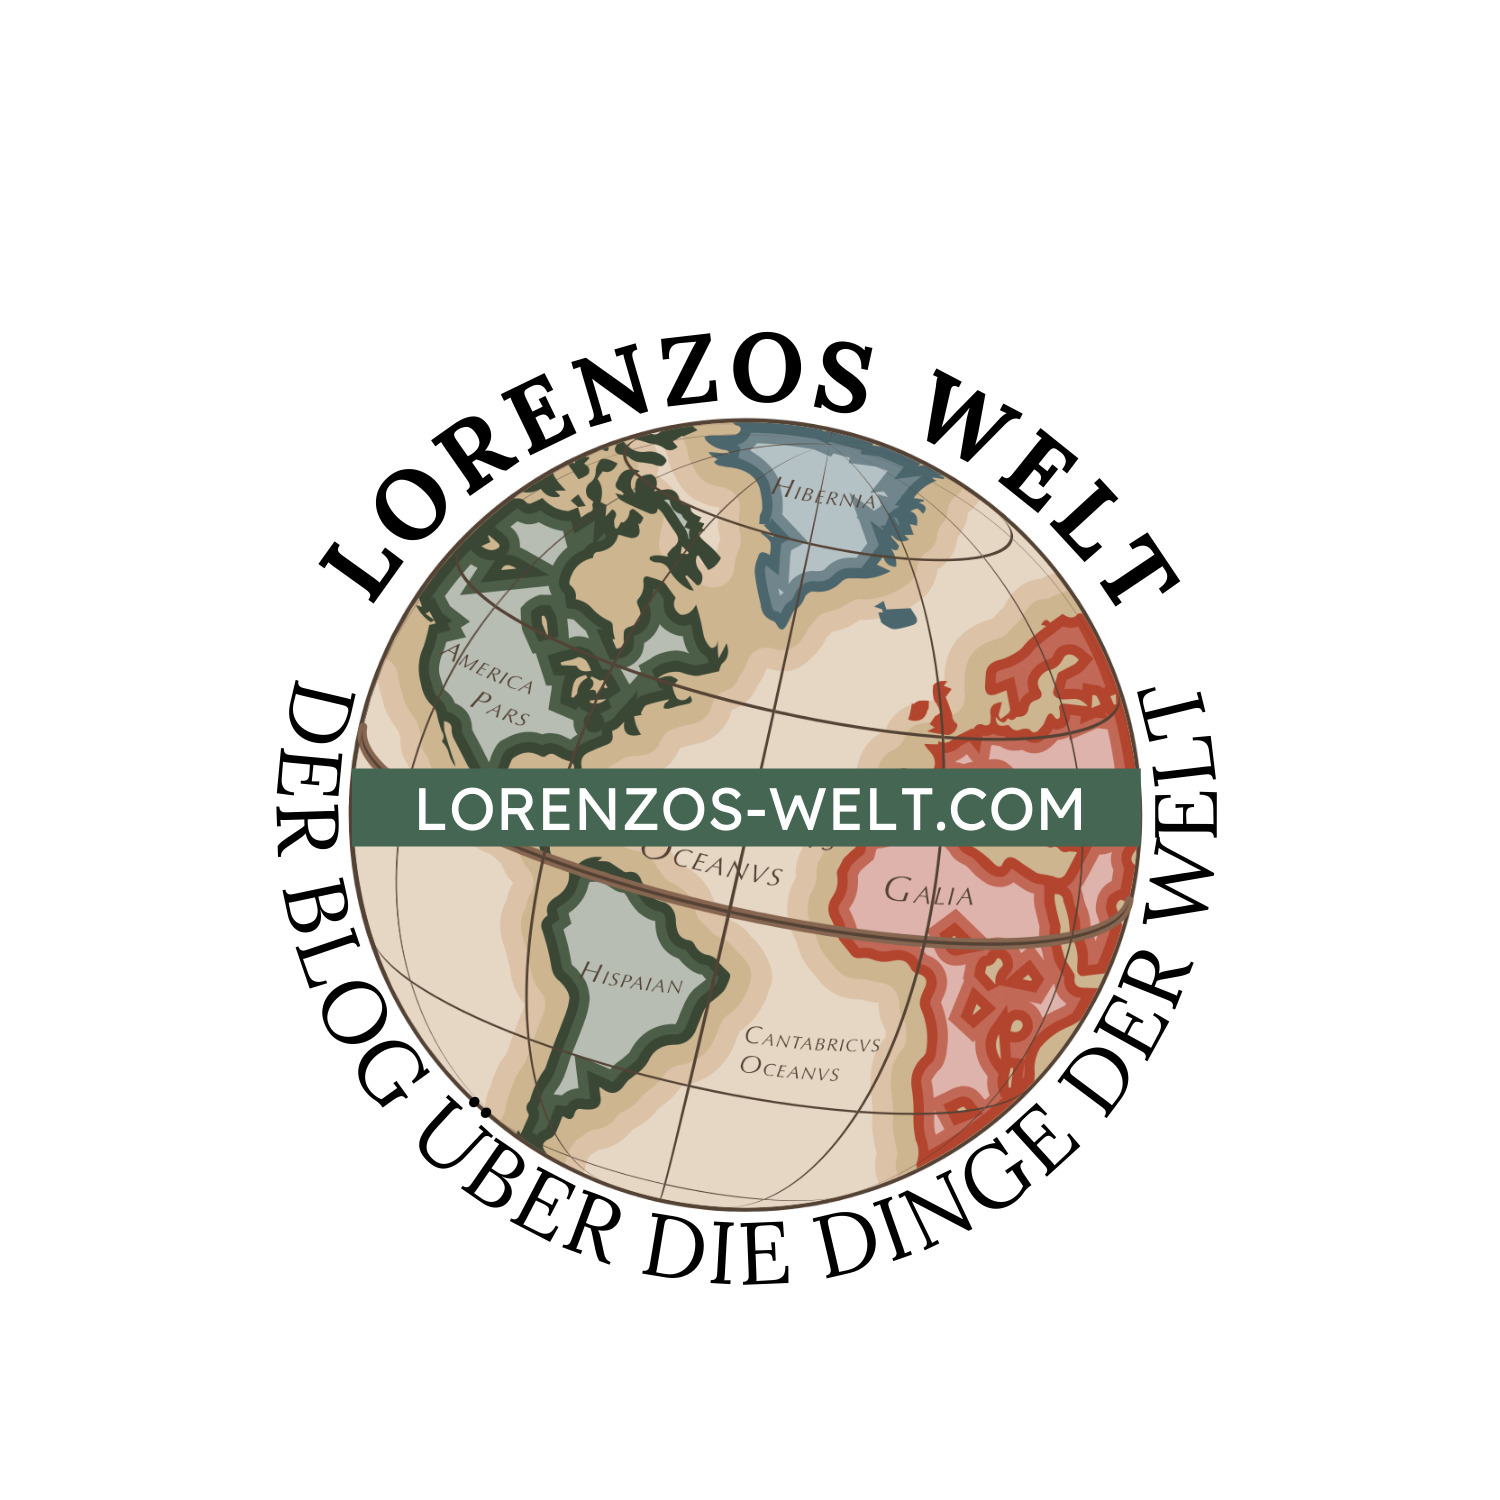 (c) Lorenzos-welt.com